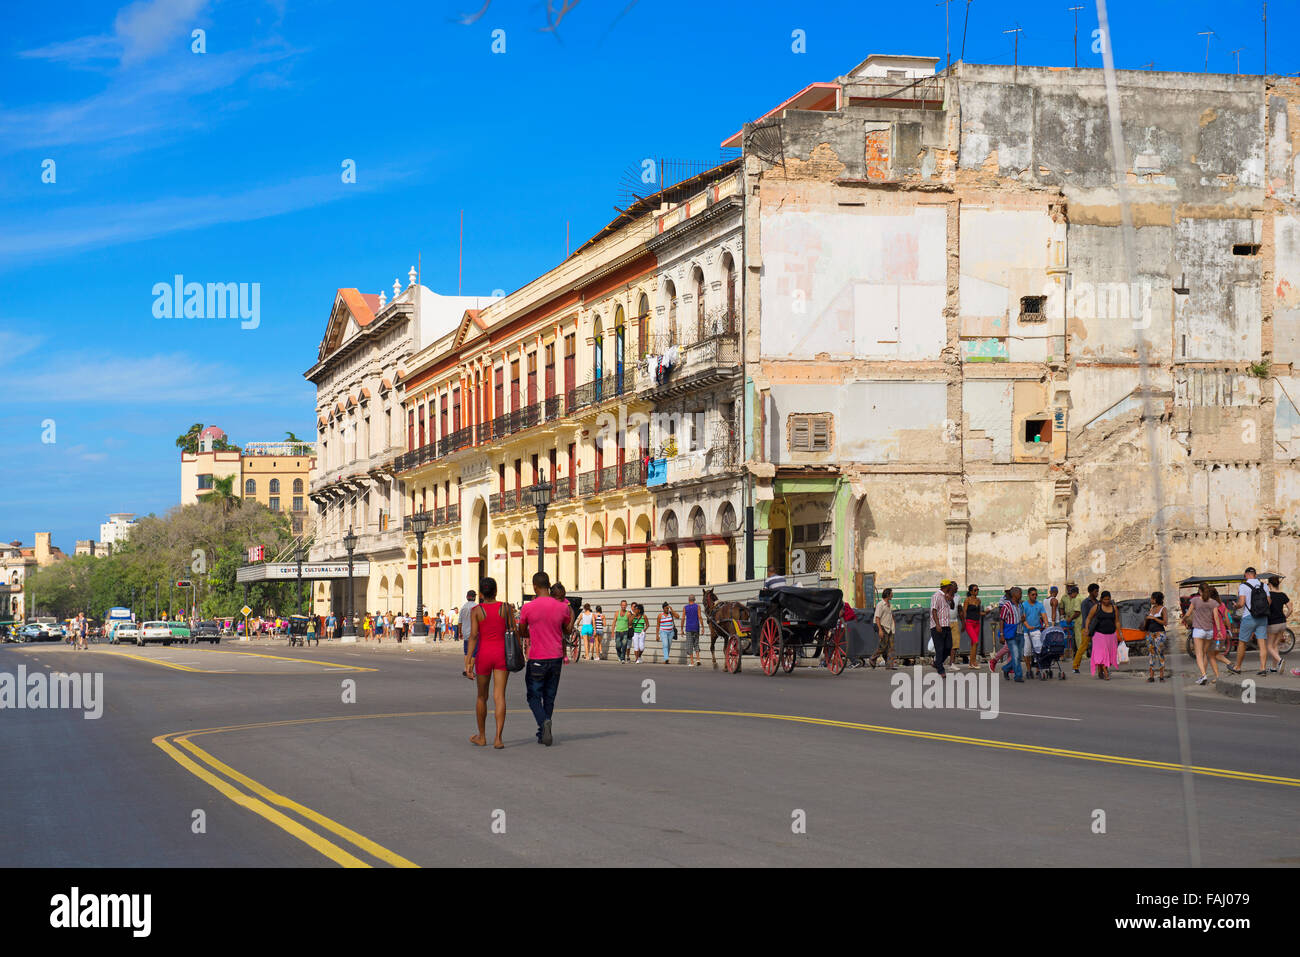 Scène de rue à La Havane, les gens marcher, le long du Paseo de Marti, également dans la perspective Cine Teatro Payret, Cuba Banque D'Images